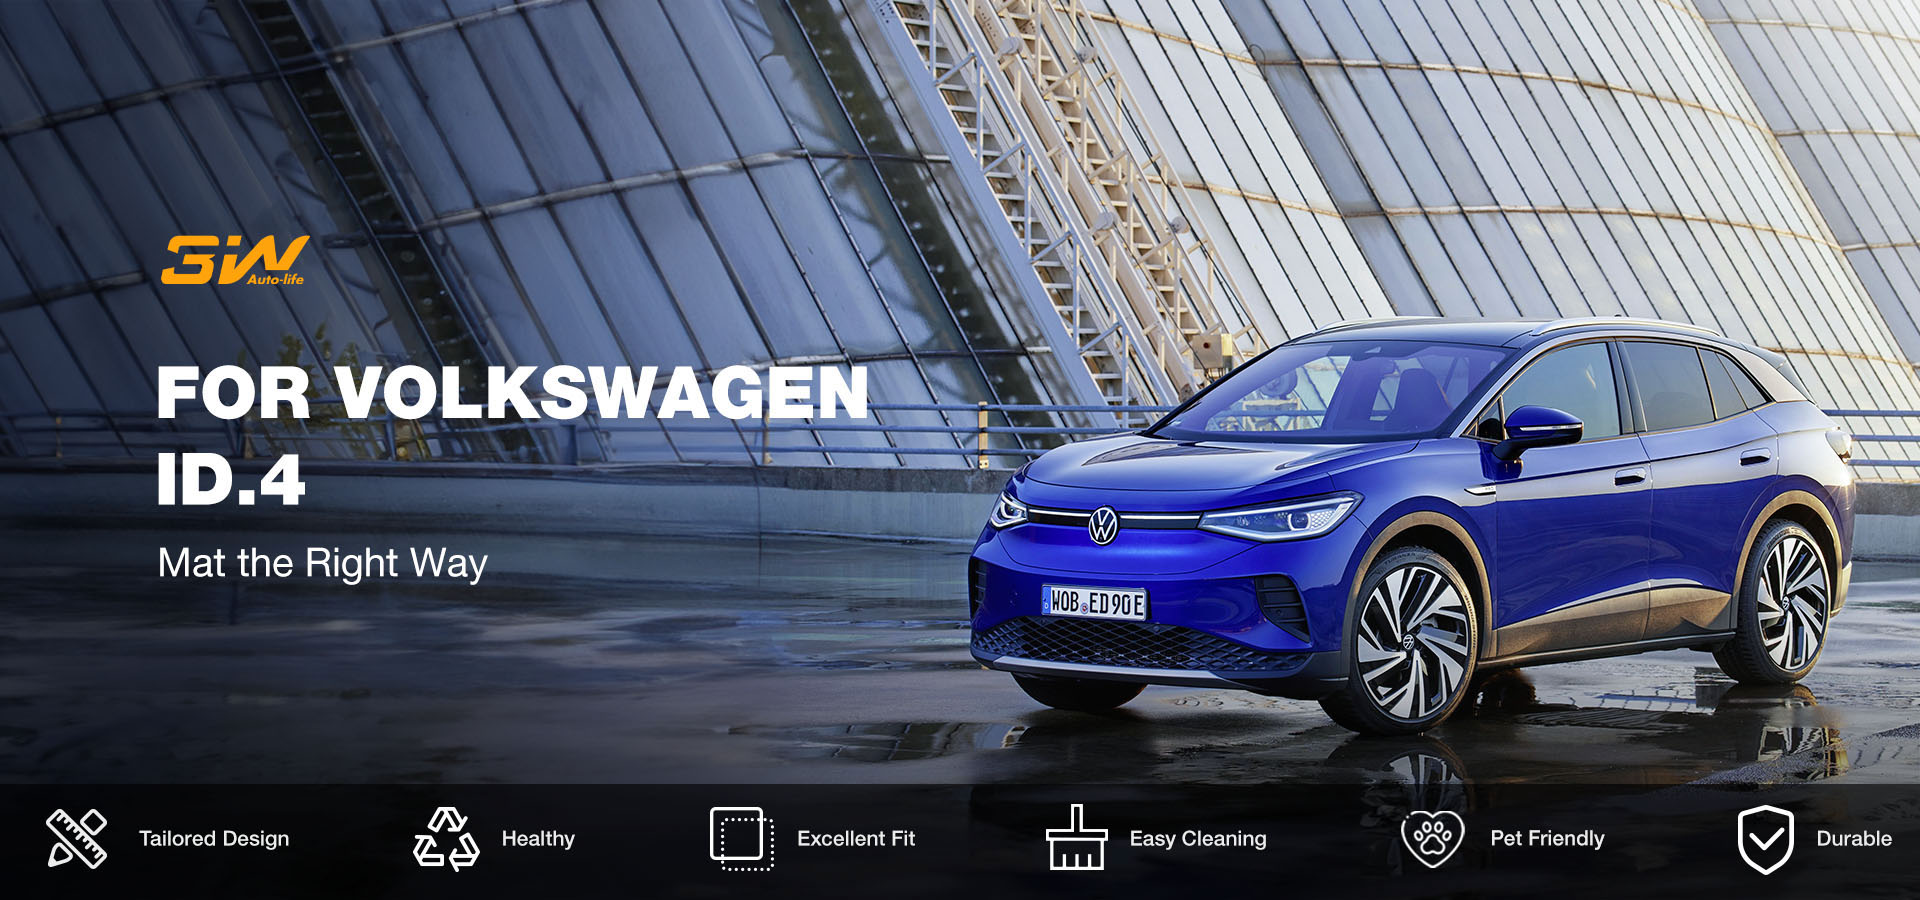  3W Floor Mats Fit for Volkswagen ID.4 2021-2023, All